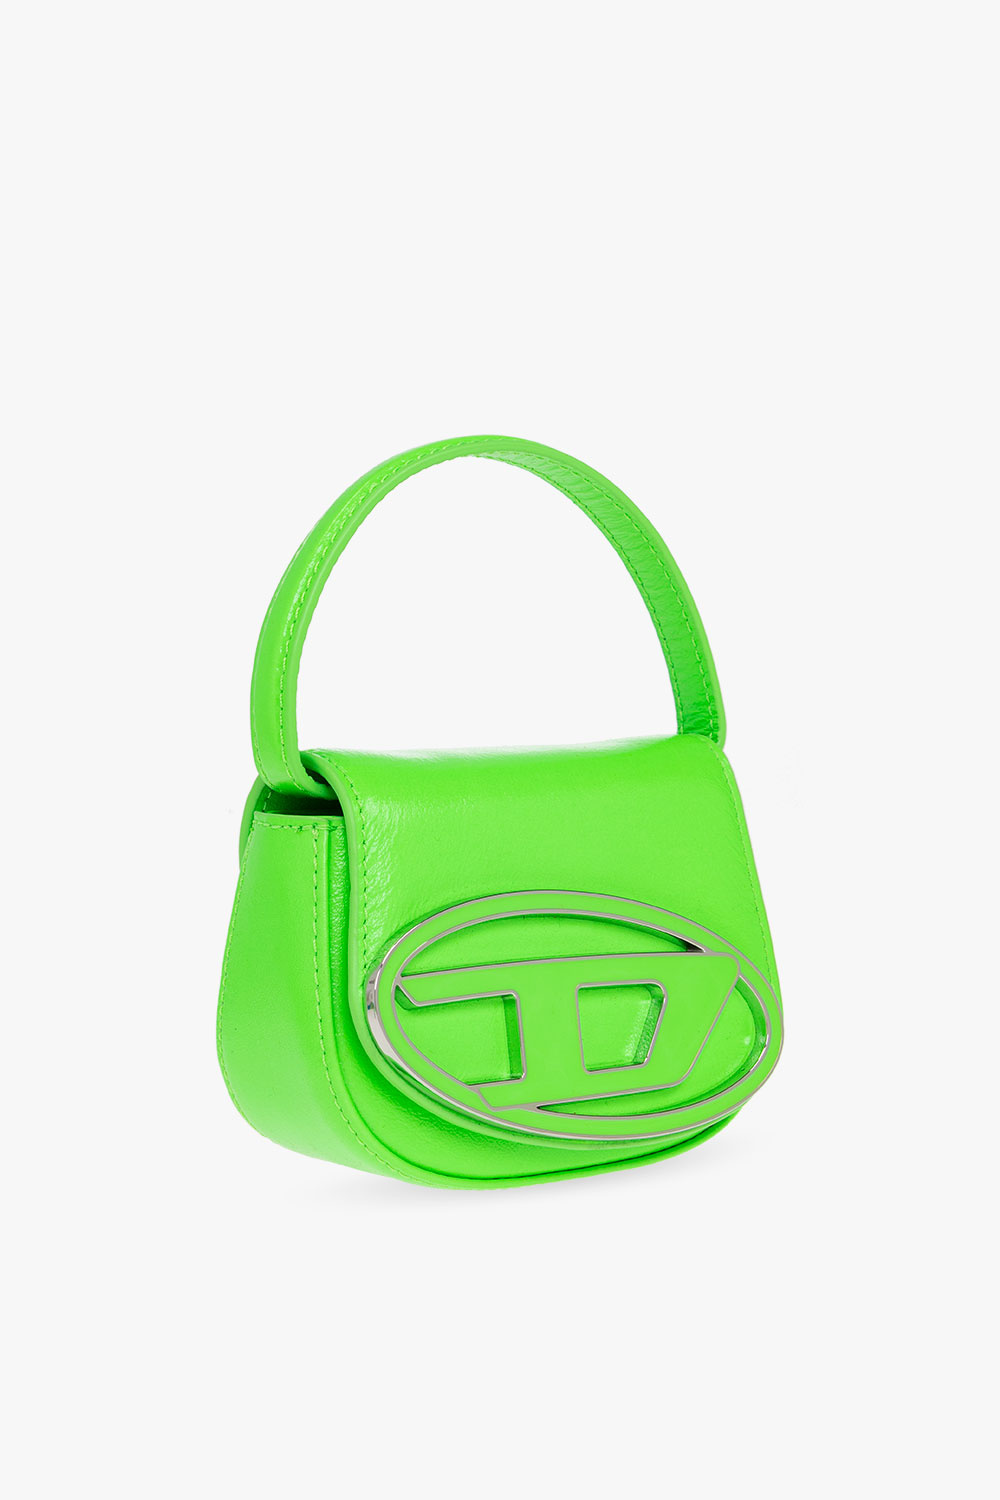 Louis Vuitton Loop Baguette Bag - Vitkac shop online